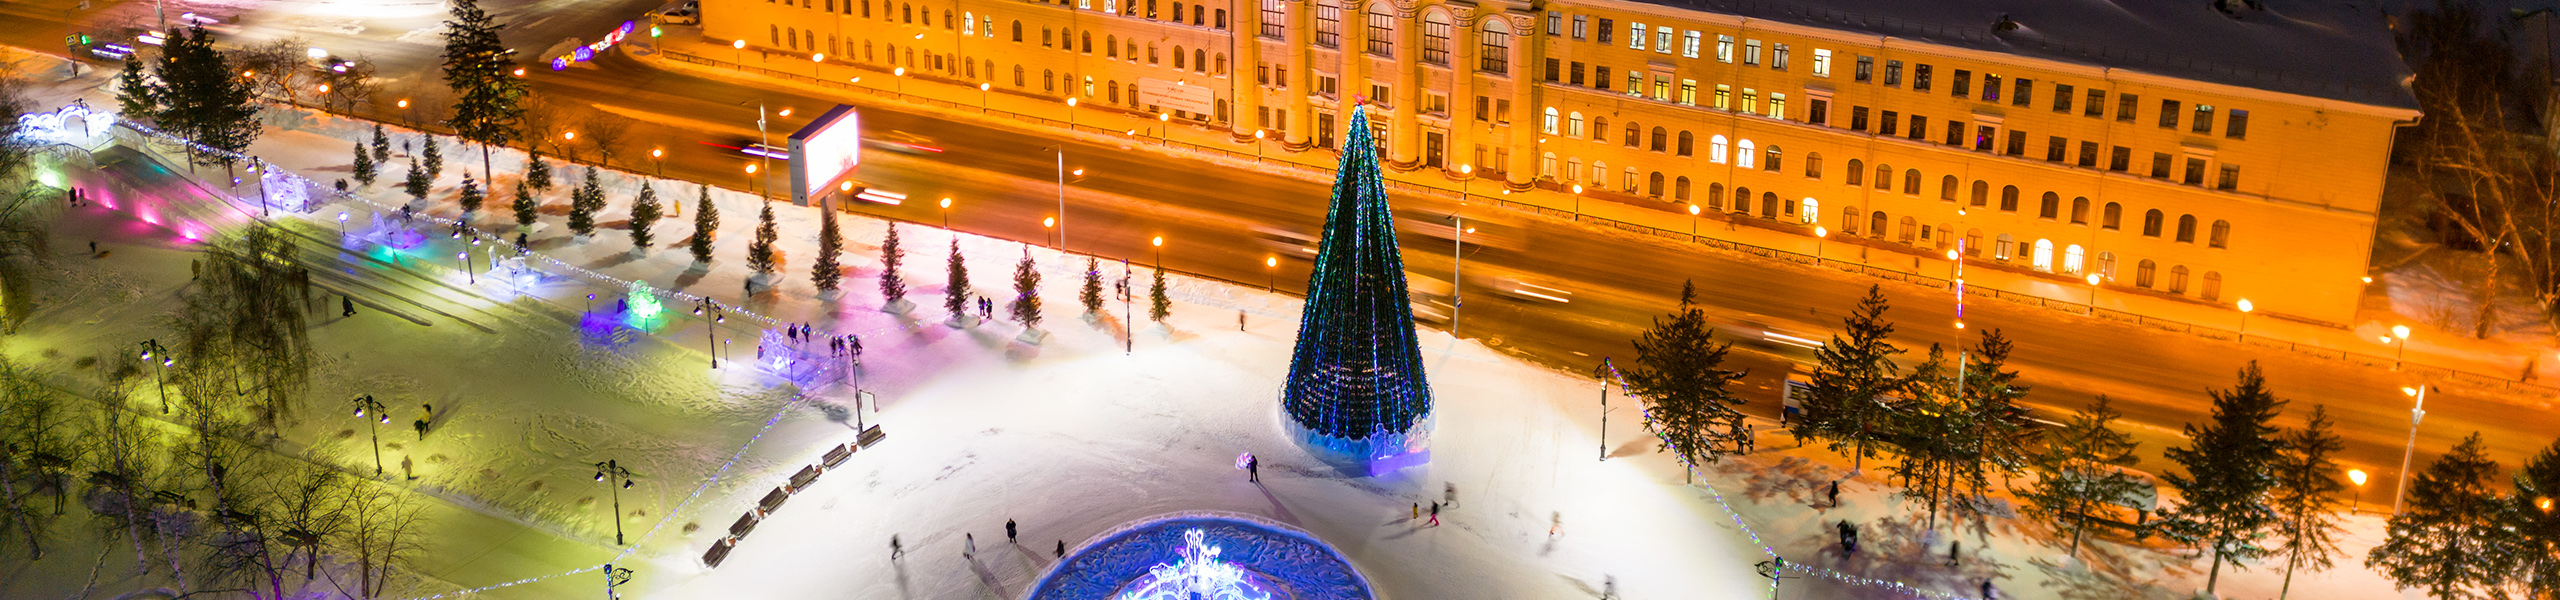 Городская елка украшенная видеогирляндой в Томске 